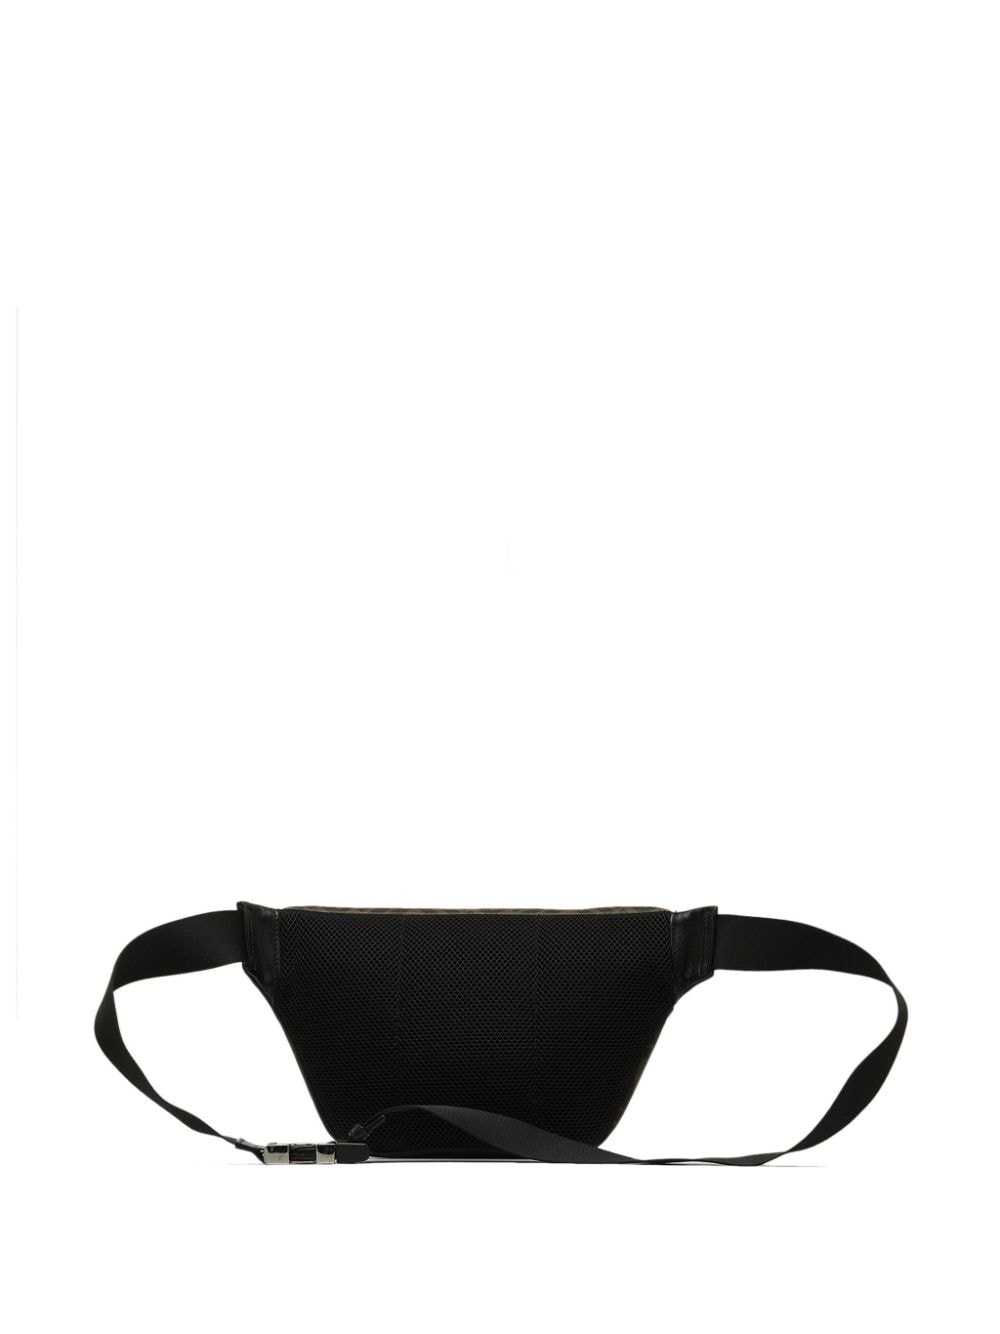 Fendi Pre-Owned 2010-2022 Zucca belt bag - Black - image 2